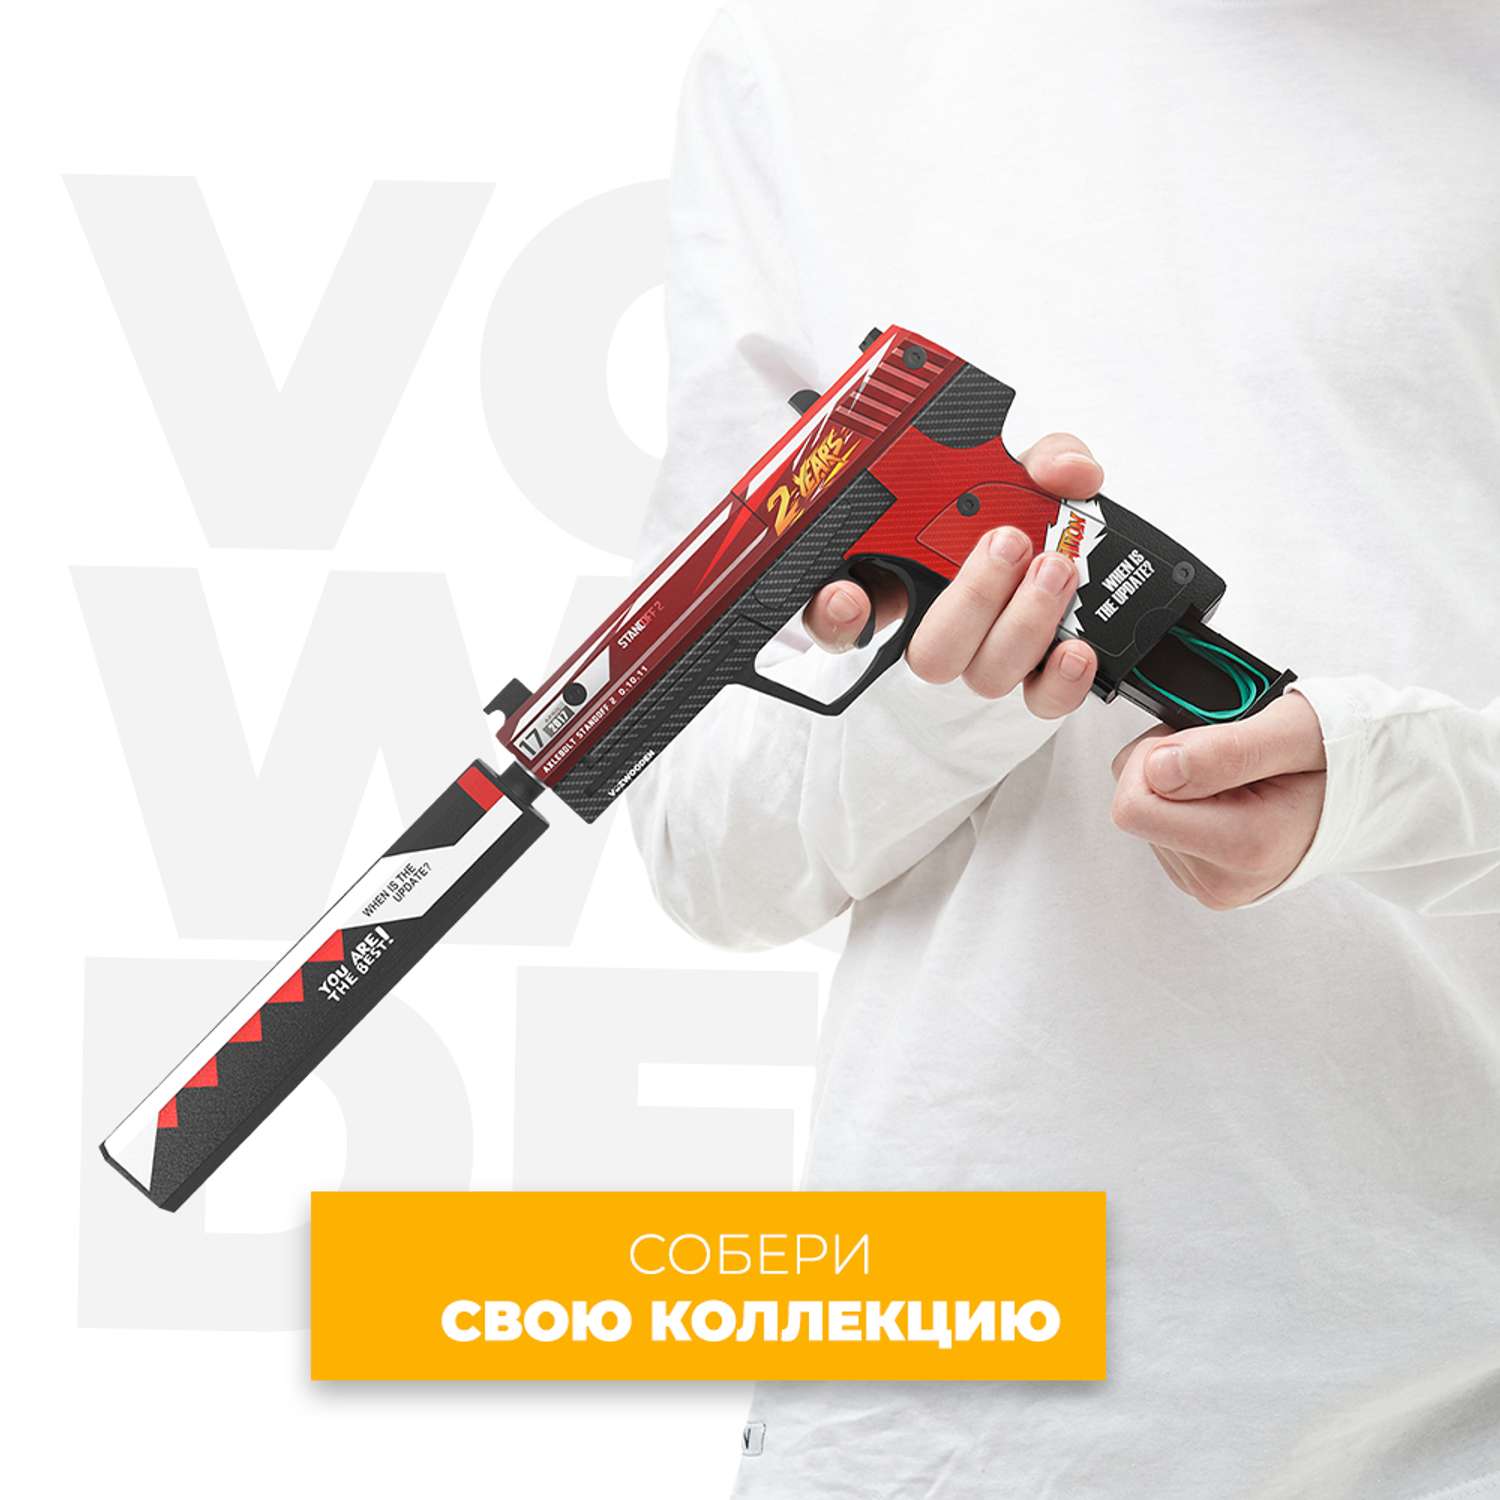 Игрушечный пистолет VozWooden USP 2 года Красный Стандофф 2 резинкострел деревянный - фото 7